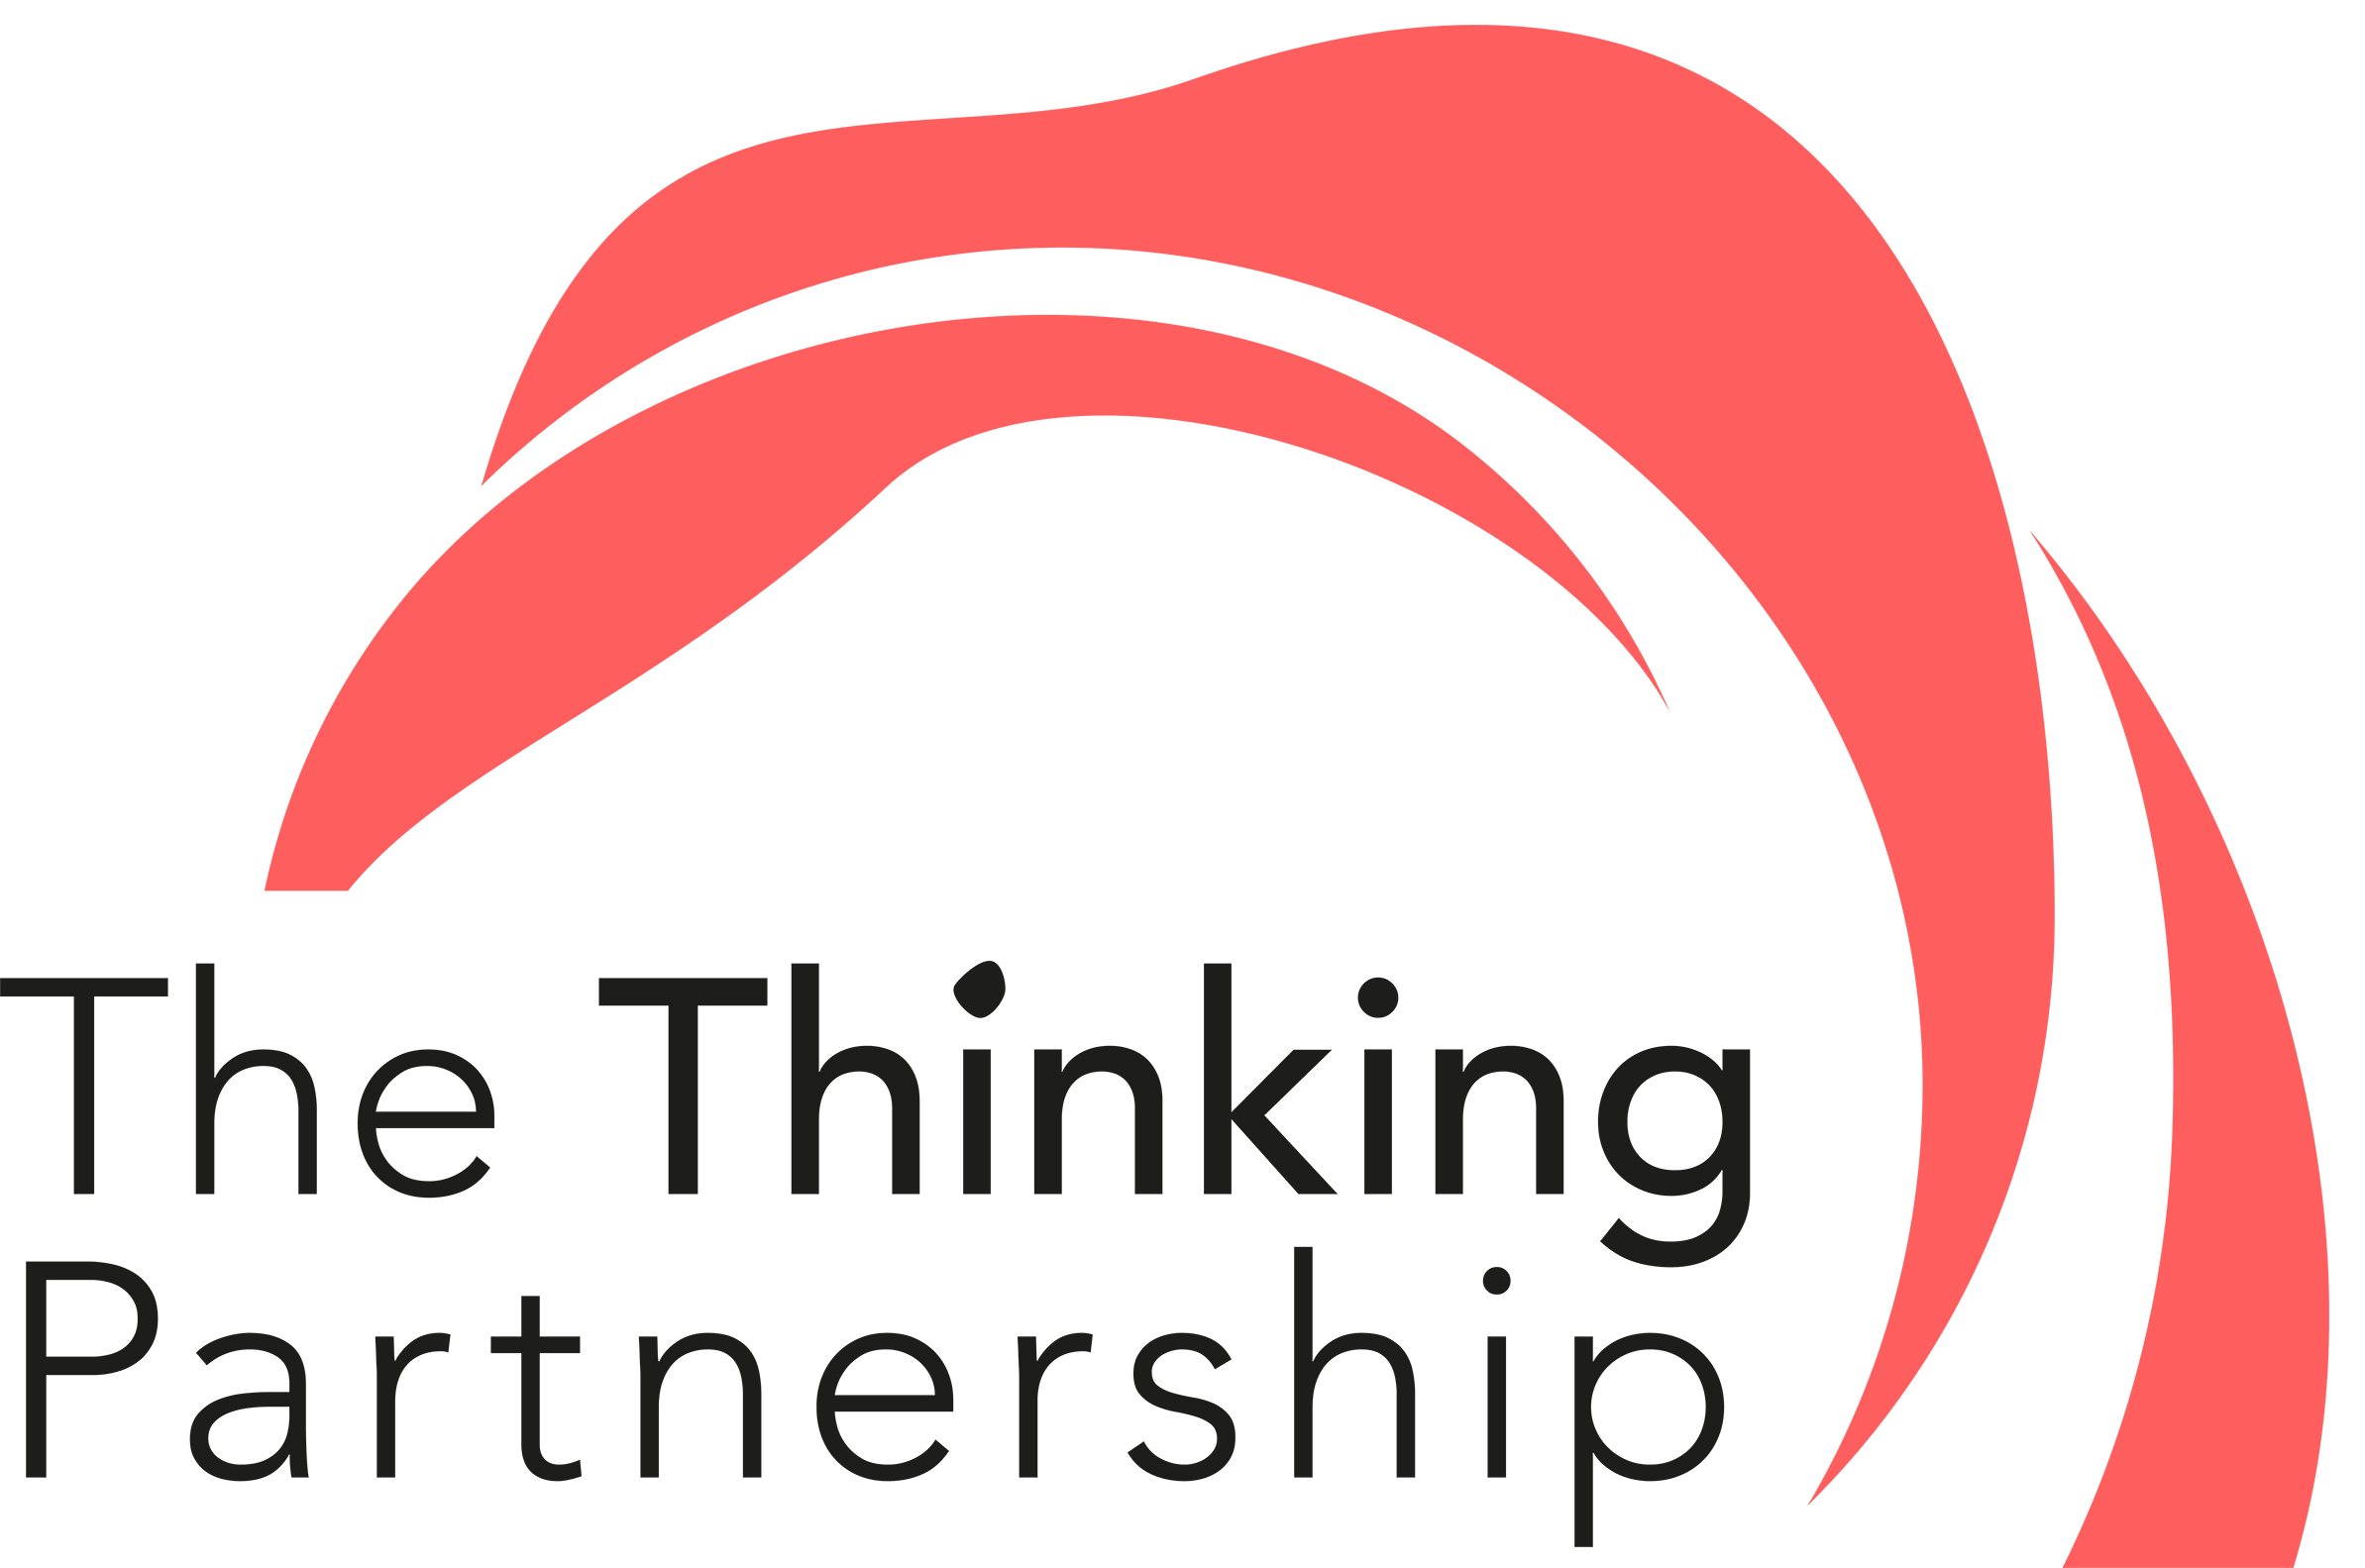 The Thinking Partnership